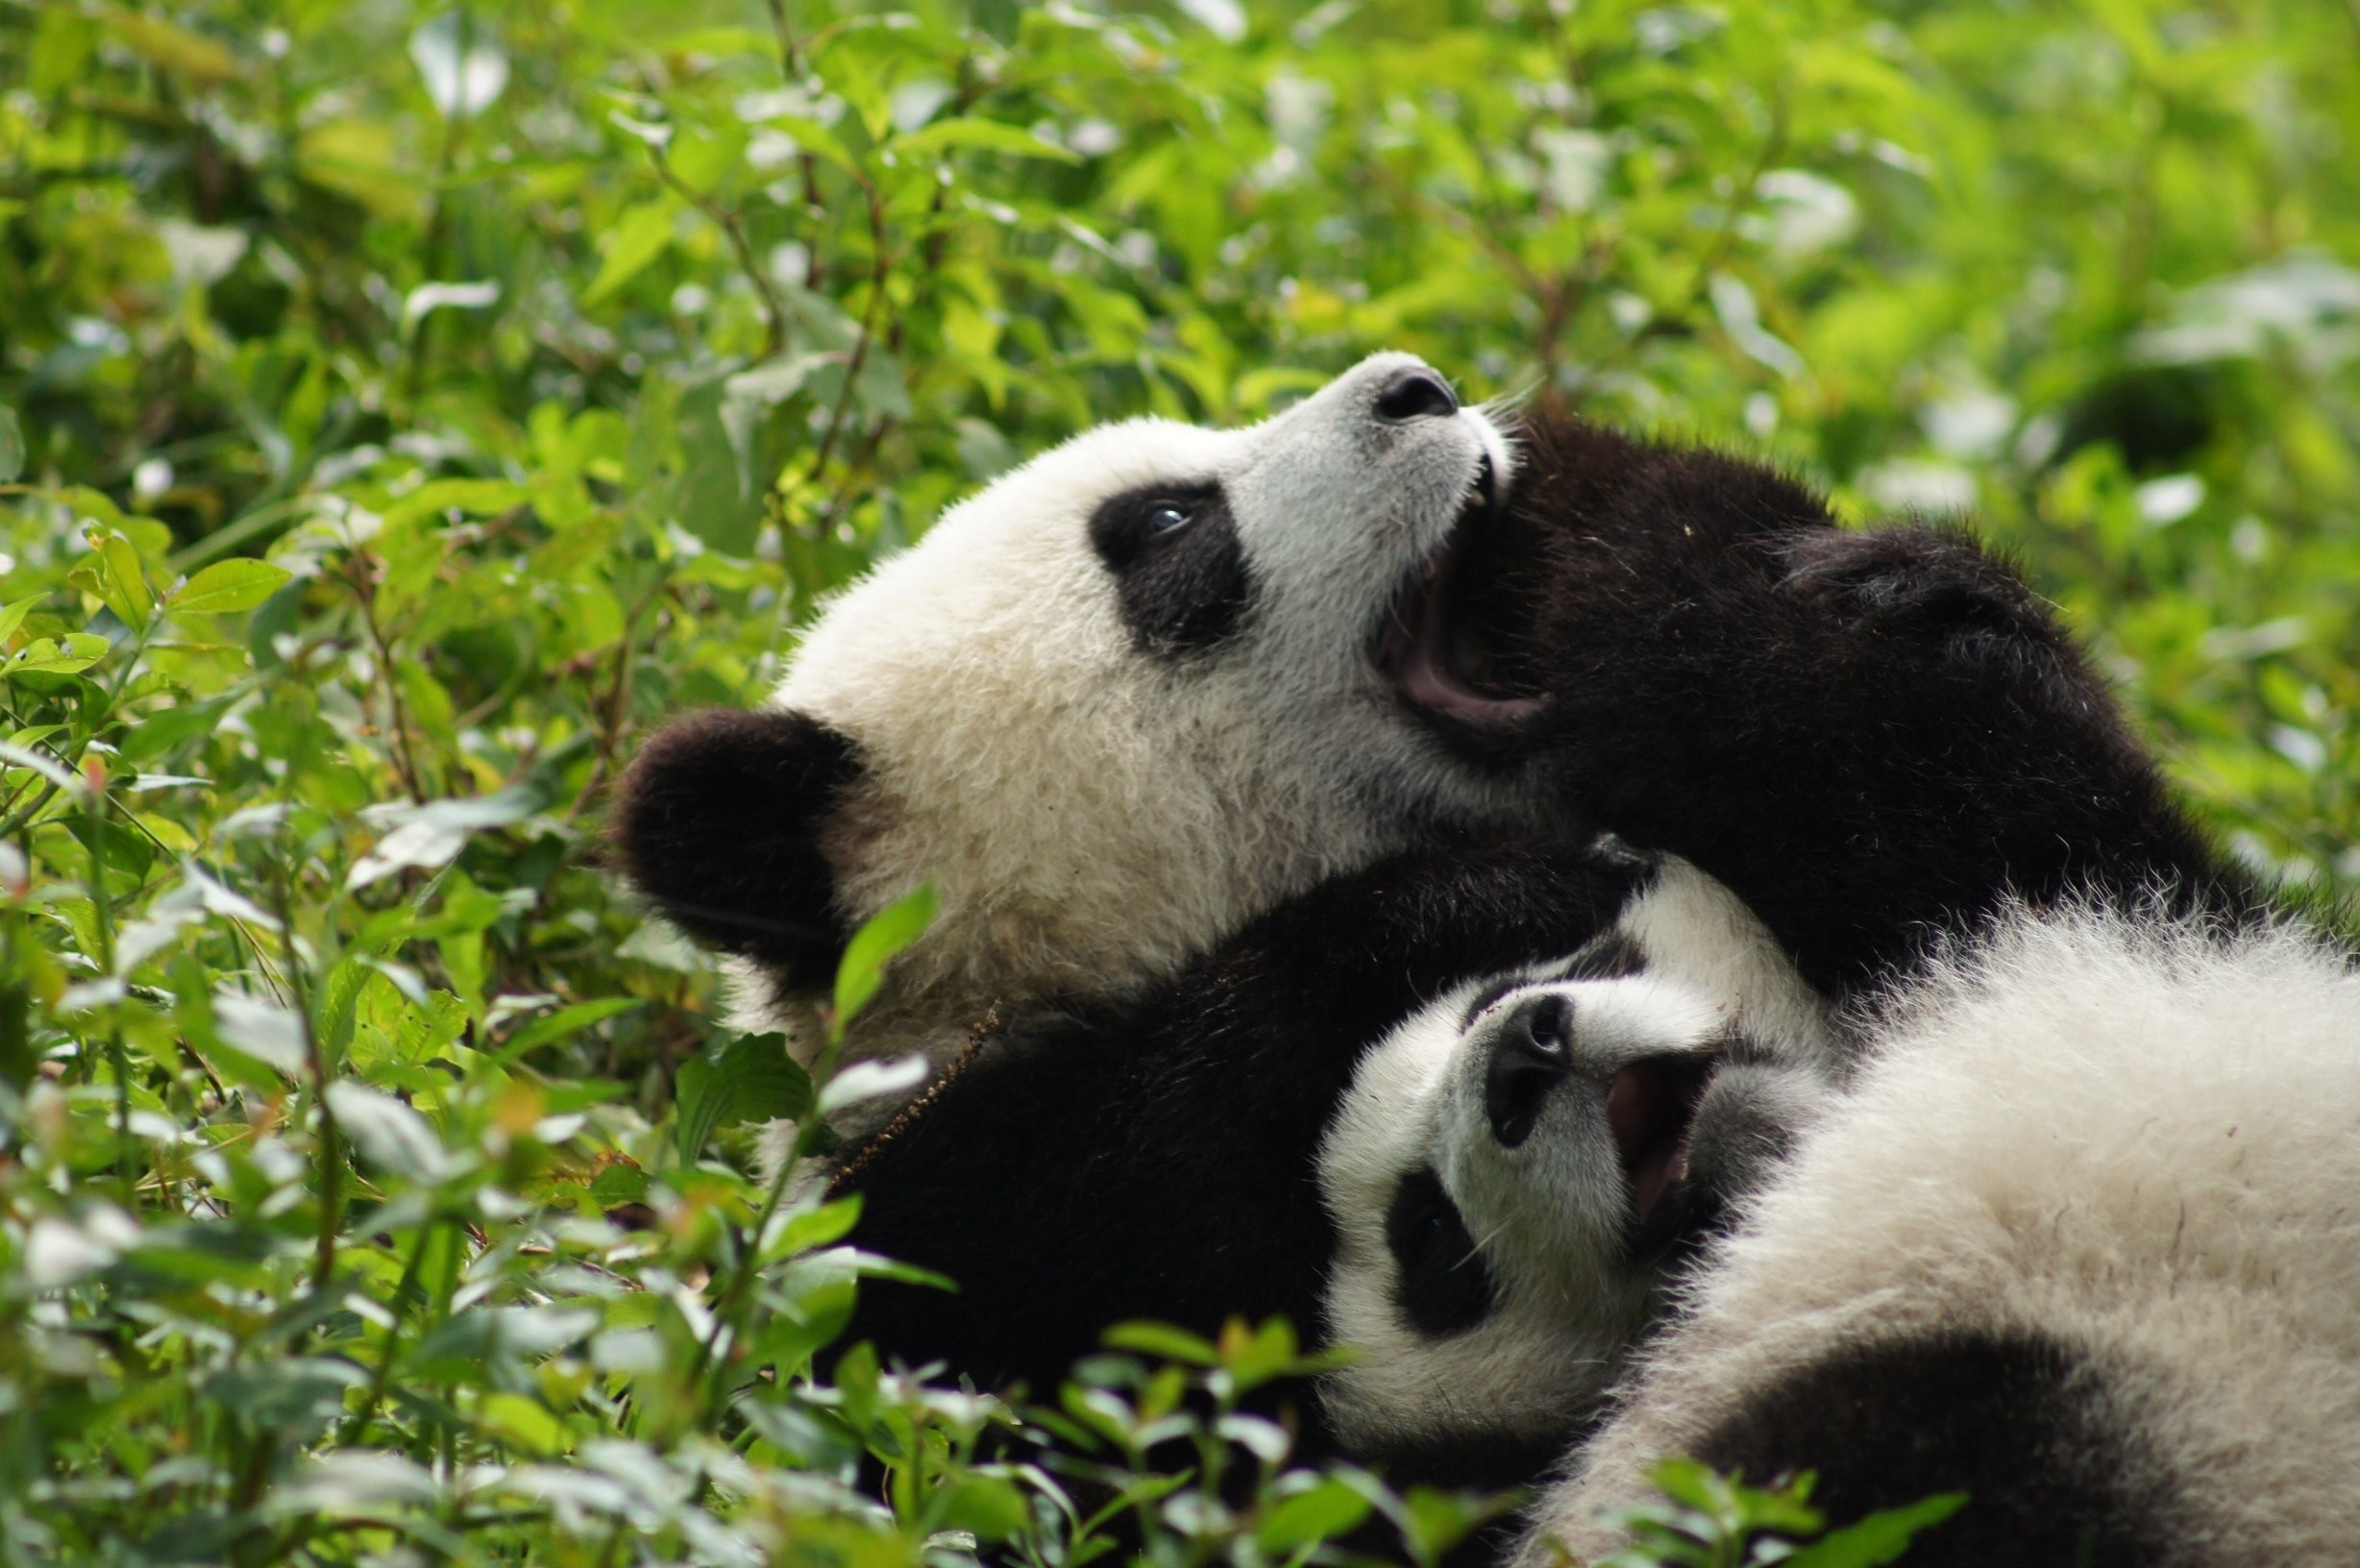 Panda Pandas Baer Bears Baby Cute 33 Wallpaper 2456x1632 364460 2456x1632